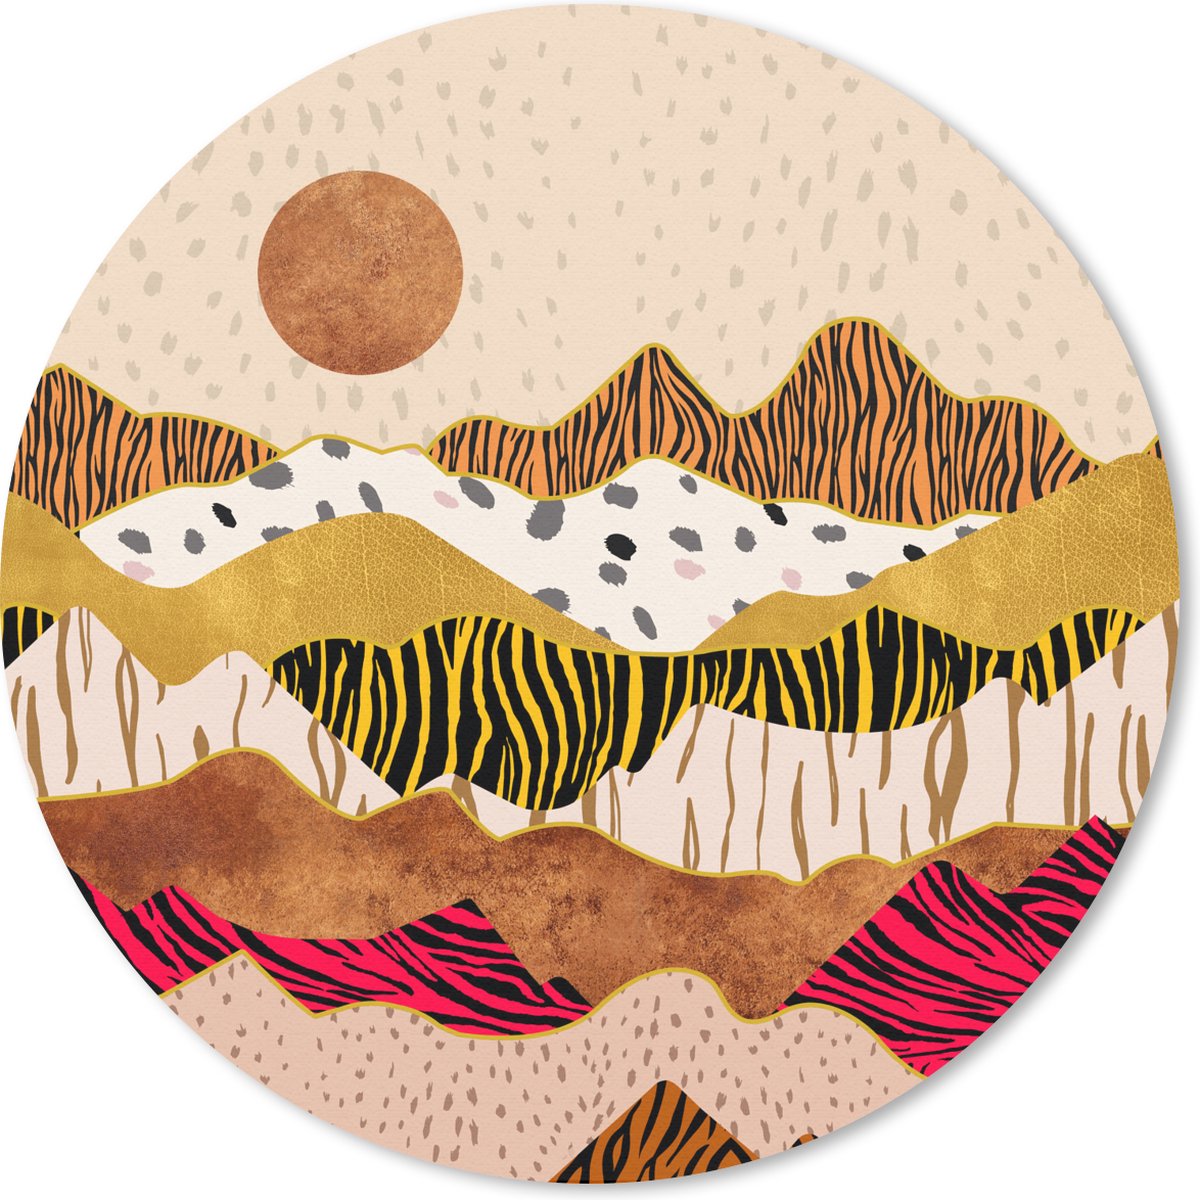 Muismat - Mousepad - Rond - Tijgerprint - Goud - Pastel - 20x20 cm - Ronde muismat